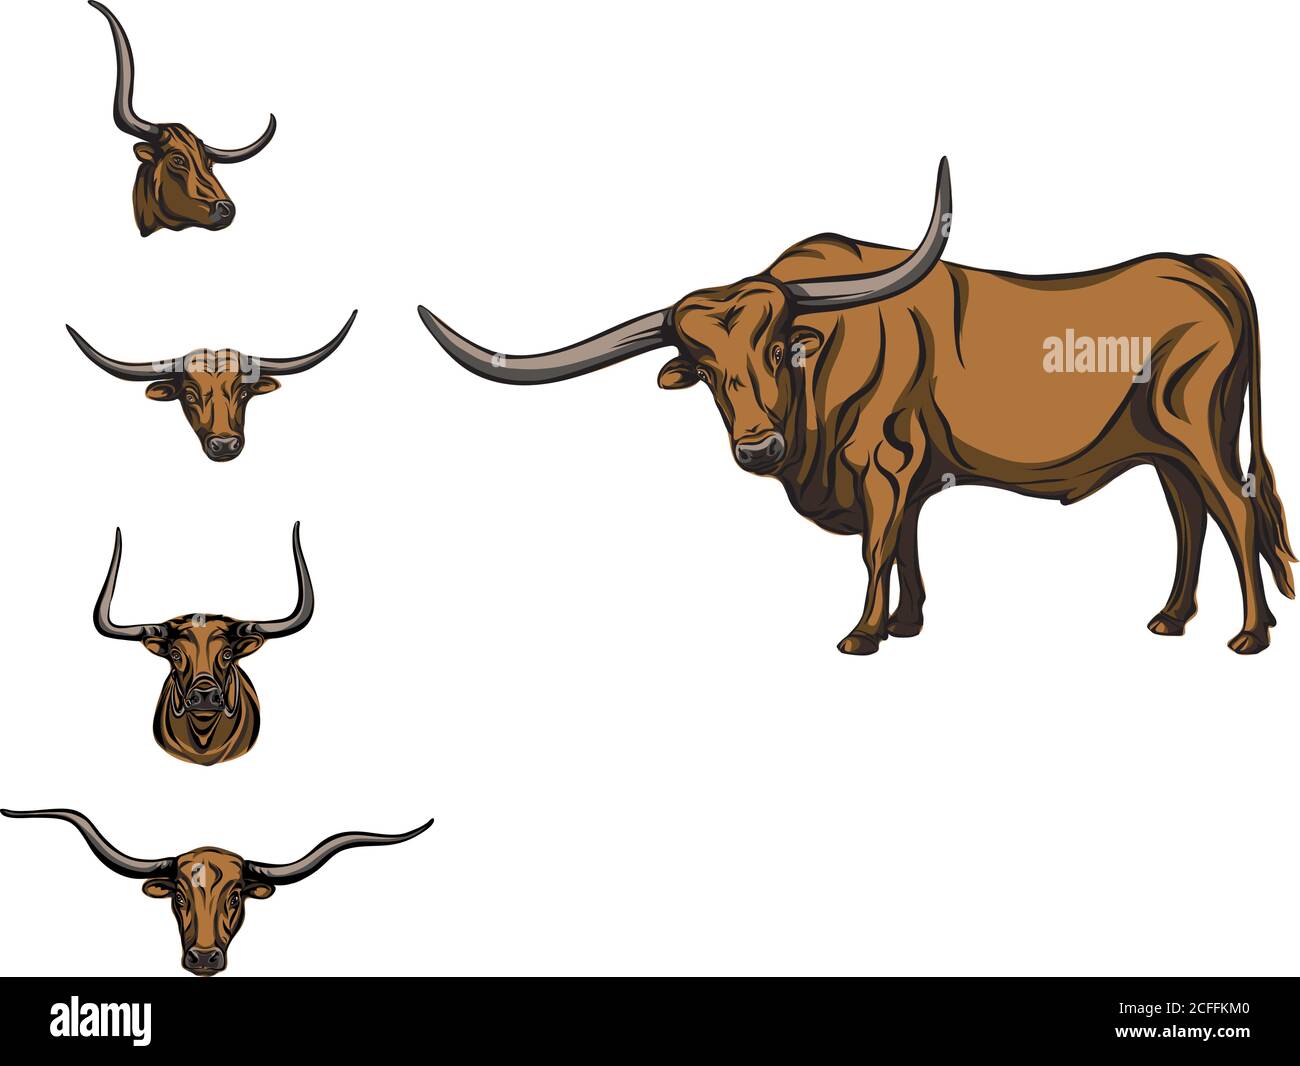 búfalo, toro, cabeza, cuernos, vector, imagen, dibujo, negro, animal, cría de animales, cría de ganado, aislado, ilustración, pezuñas, grande, línea, mamífero Ilustración del Vector